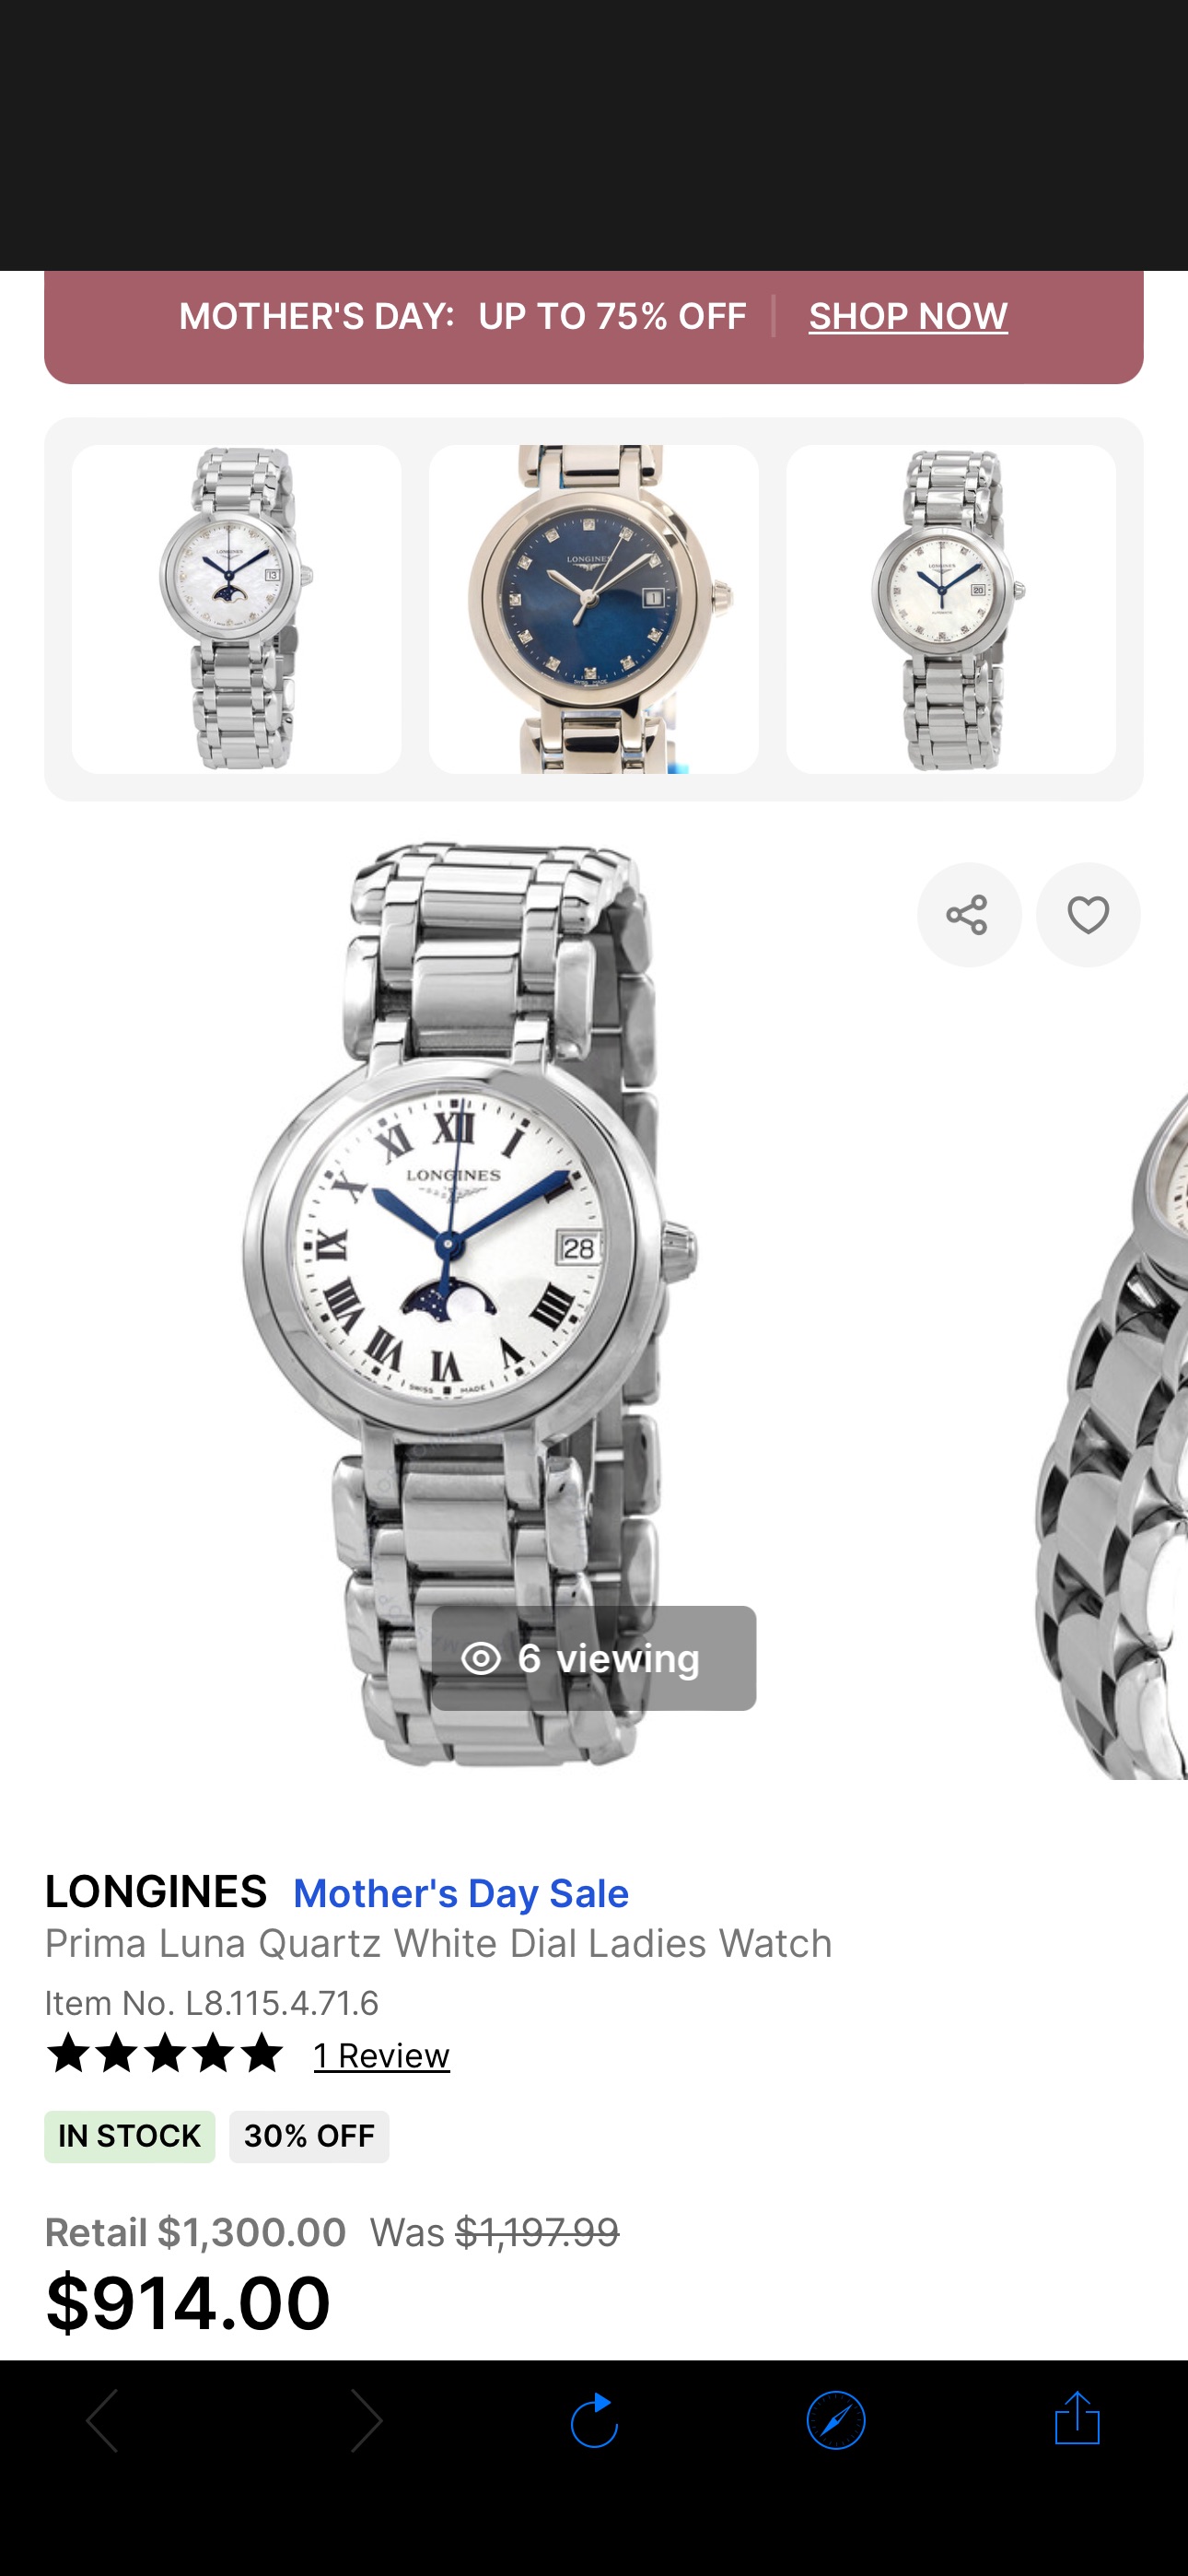 Longines Prima Luna Quartz White Dial Ladies Watch L8.115.4.71.6 703200206226 - Watches, Prima Luna - Jomashop